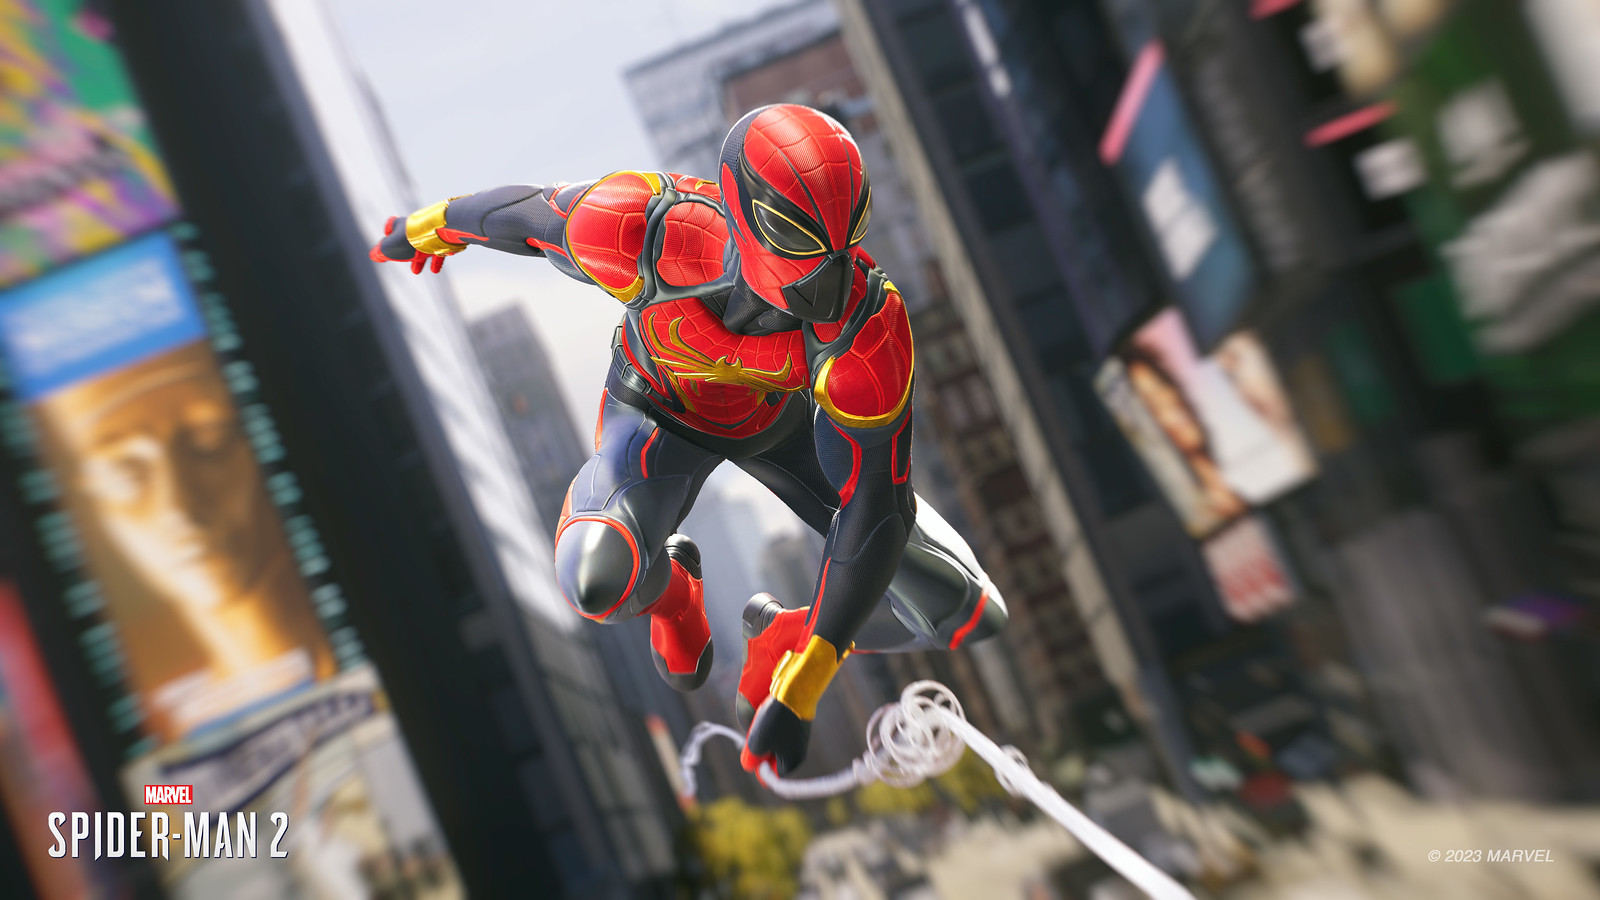 53188127758 02953fe37b h - Marvel‘s Spider-Man 2: Neuer Trailer bei State of Play und Gameplay-Details